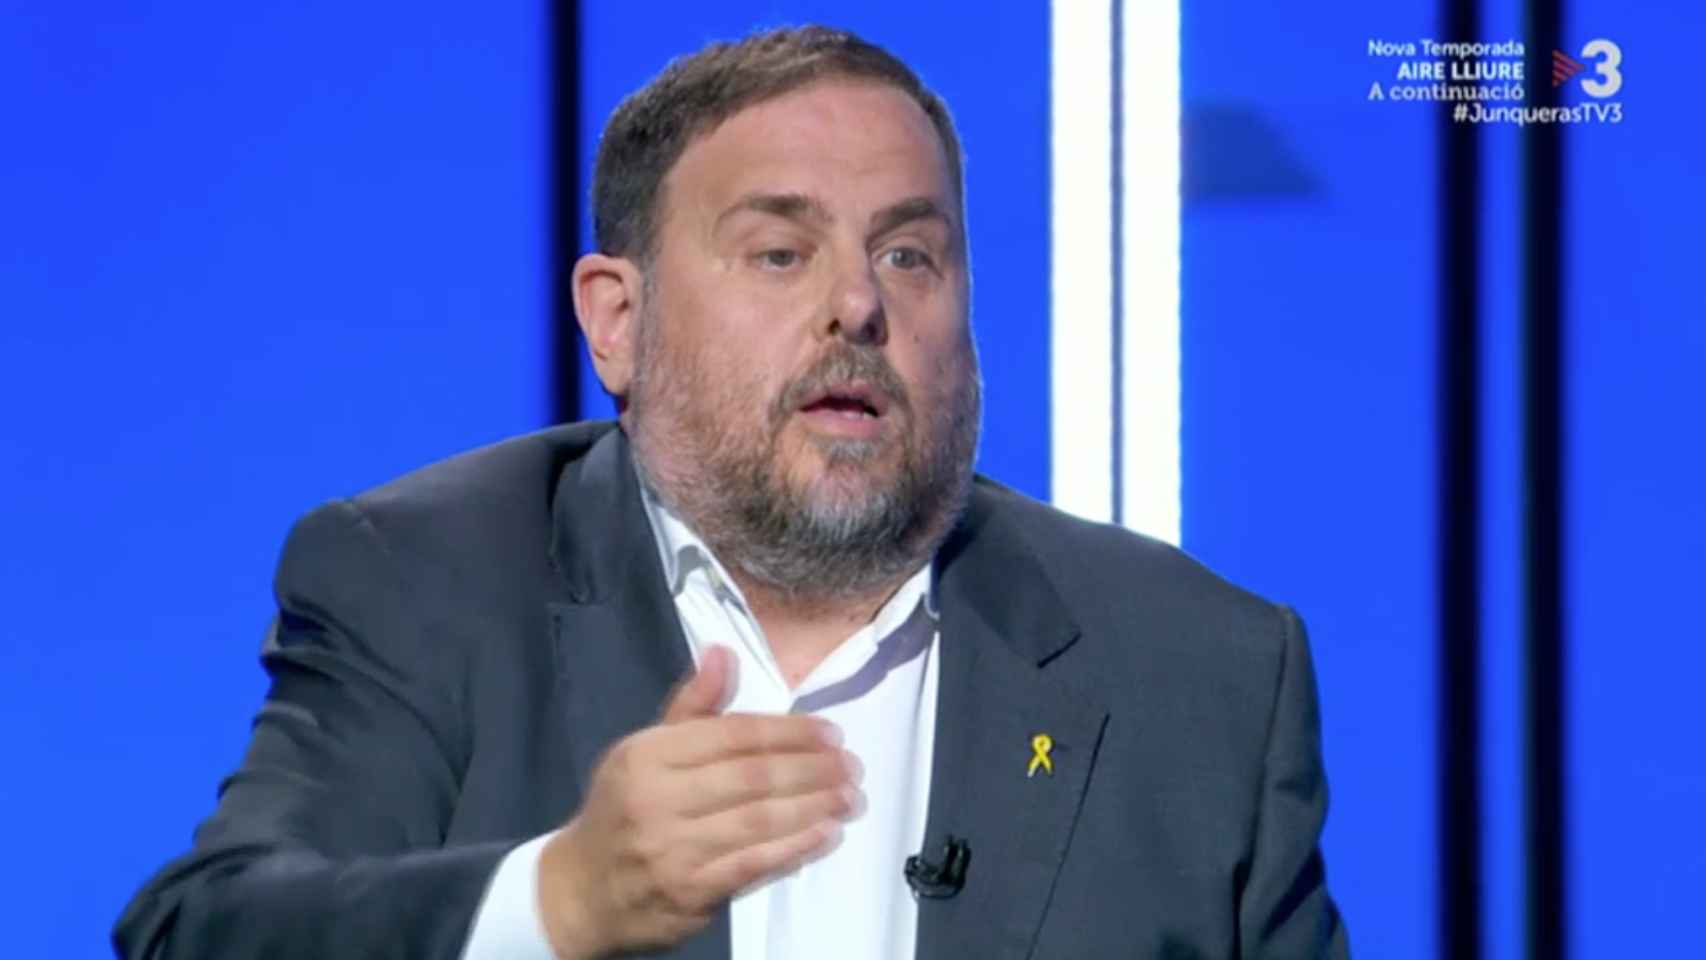 El líder de ERC, Oriol Junqueras, en TV3 durante su tercer grado / TV3